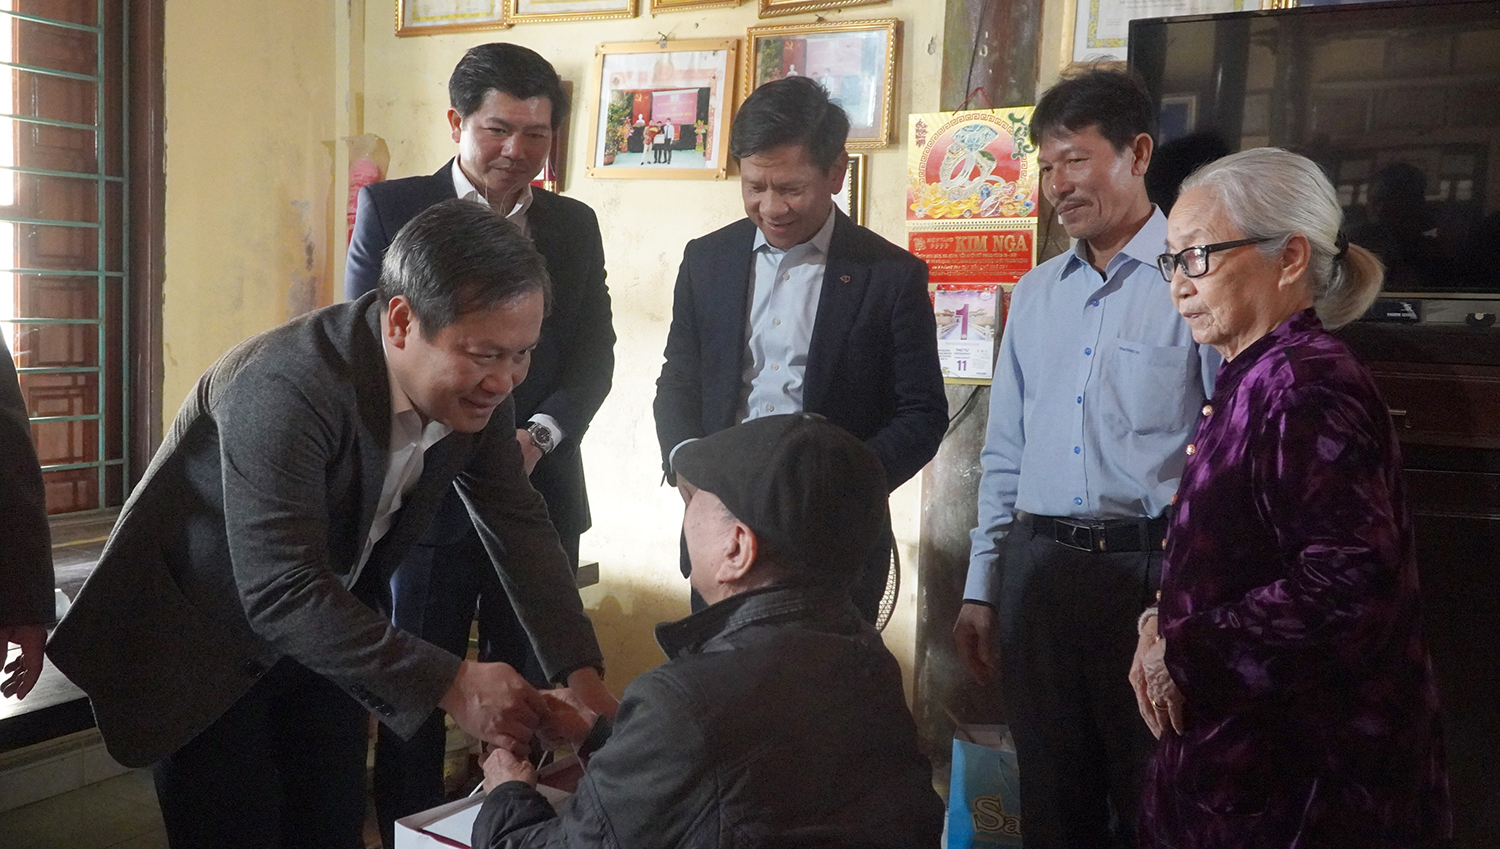 Đồng chí Bí thư Tỉnh ủy tặng quà chúc mừng đồng chí Lê Văn Khuy, đảng viên 70 năm tuổi Đảng